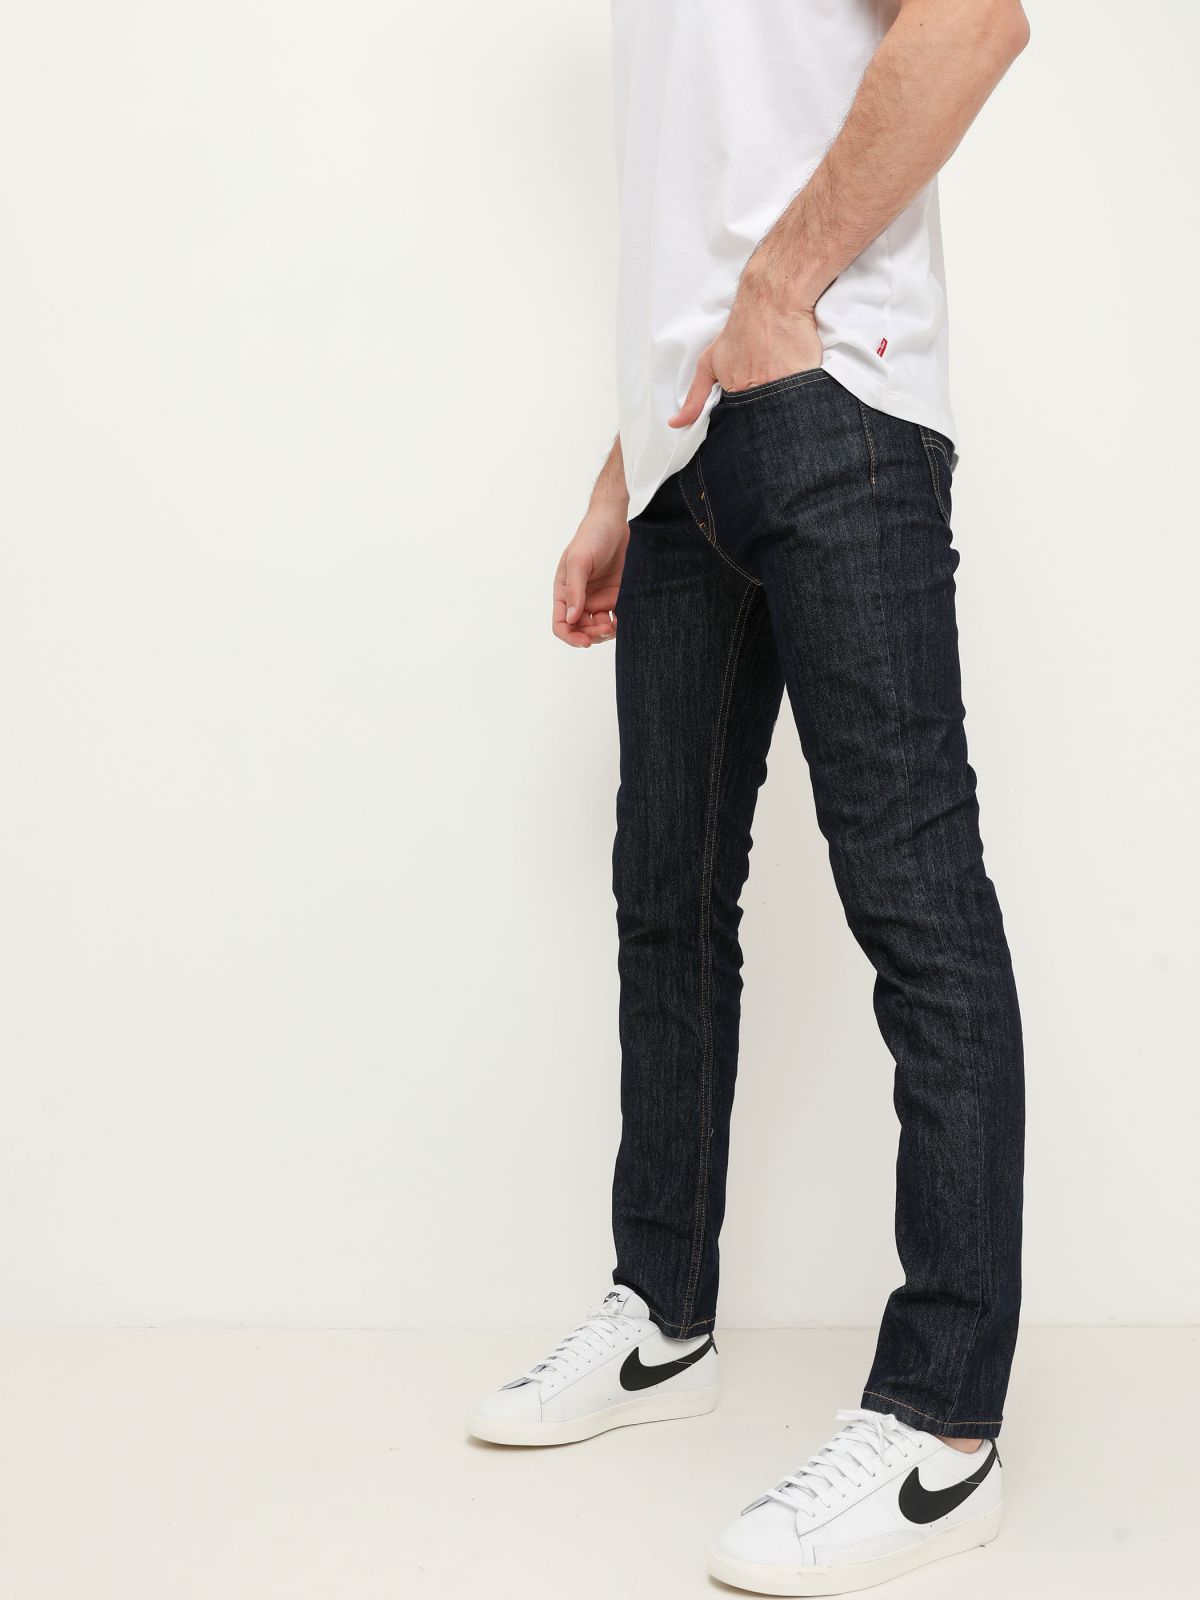  ג'ינס בגזרת Slim של LEVIS